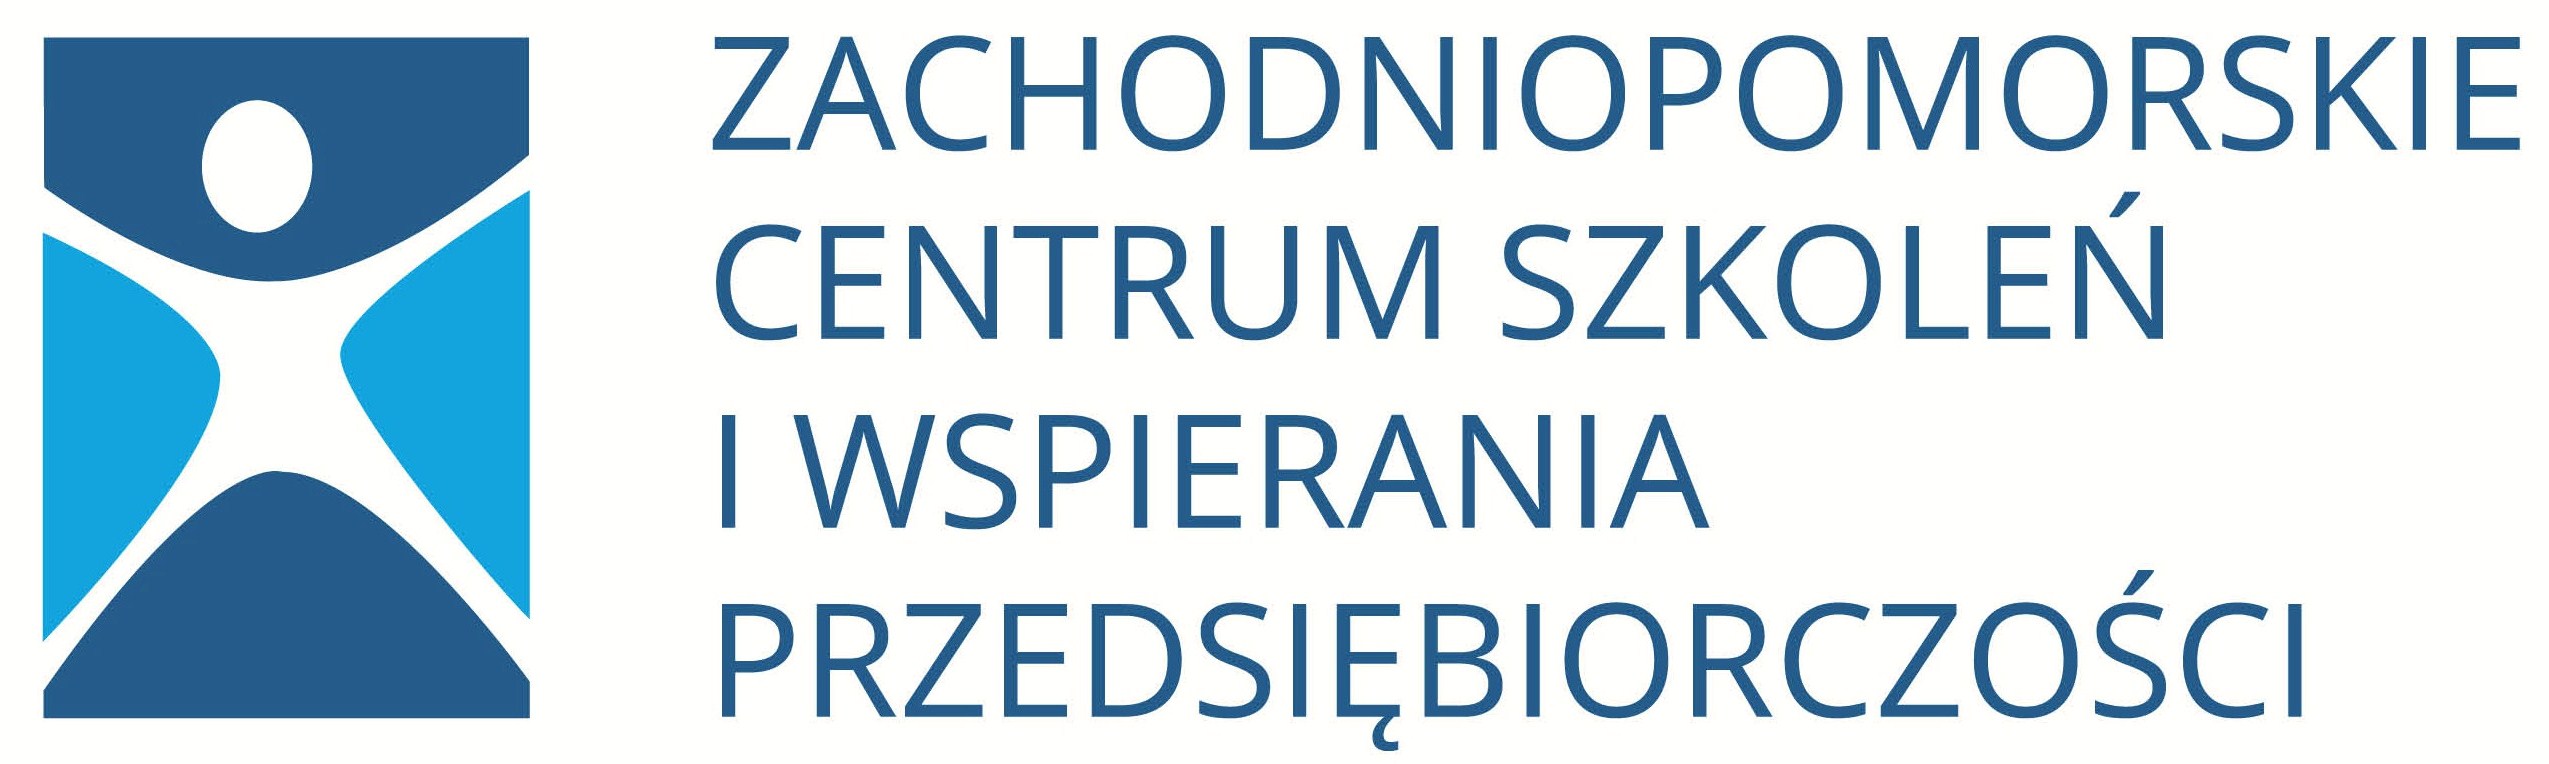 Logo Zachodniopomorskie Centrum Szkoleń i Wspierania Przedsiębiorczości Mirosław Szczeglik